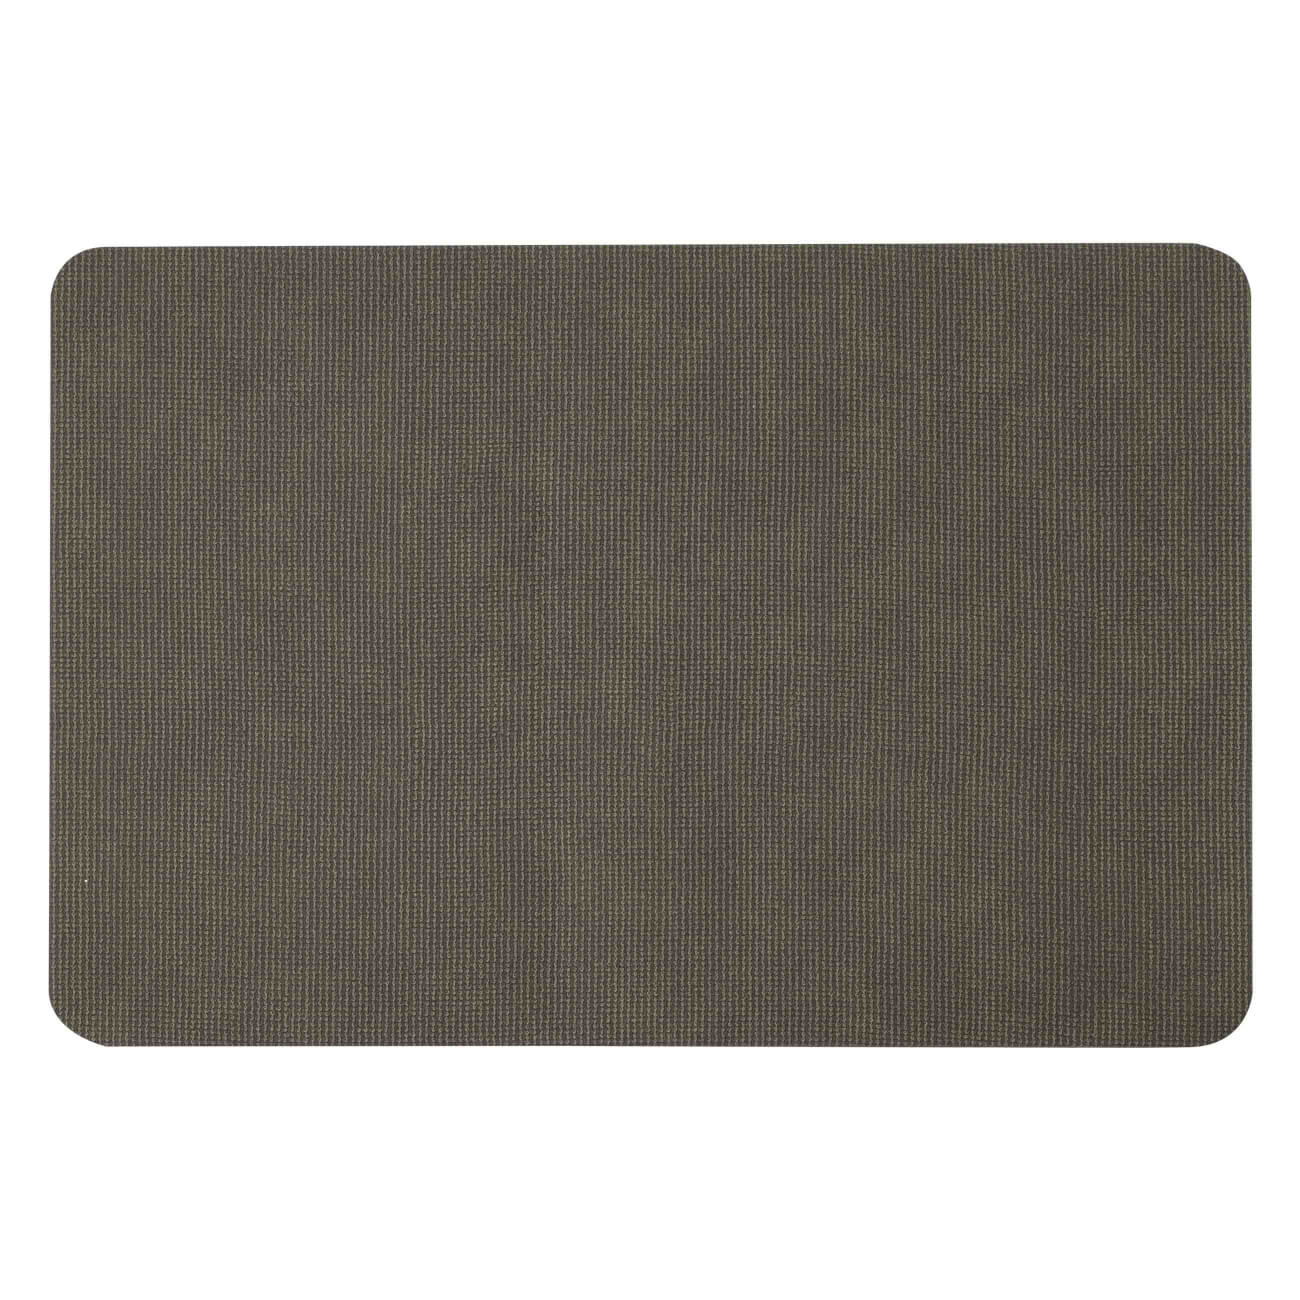 Салфетка под приборы, 30х45 см, ПВХ, прямоугольная, темно-зеленая, Полосы, Rock изображение № 1